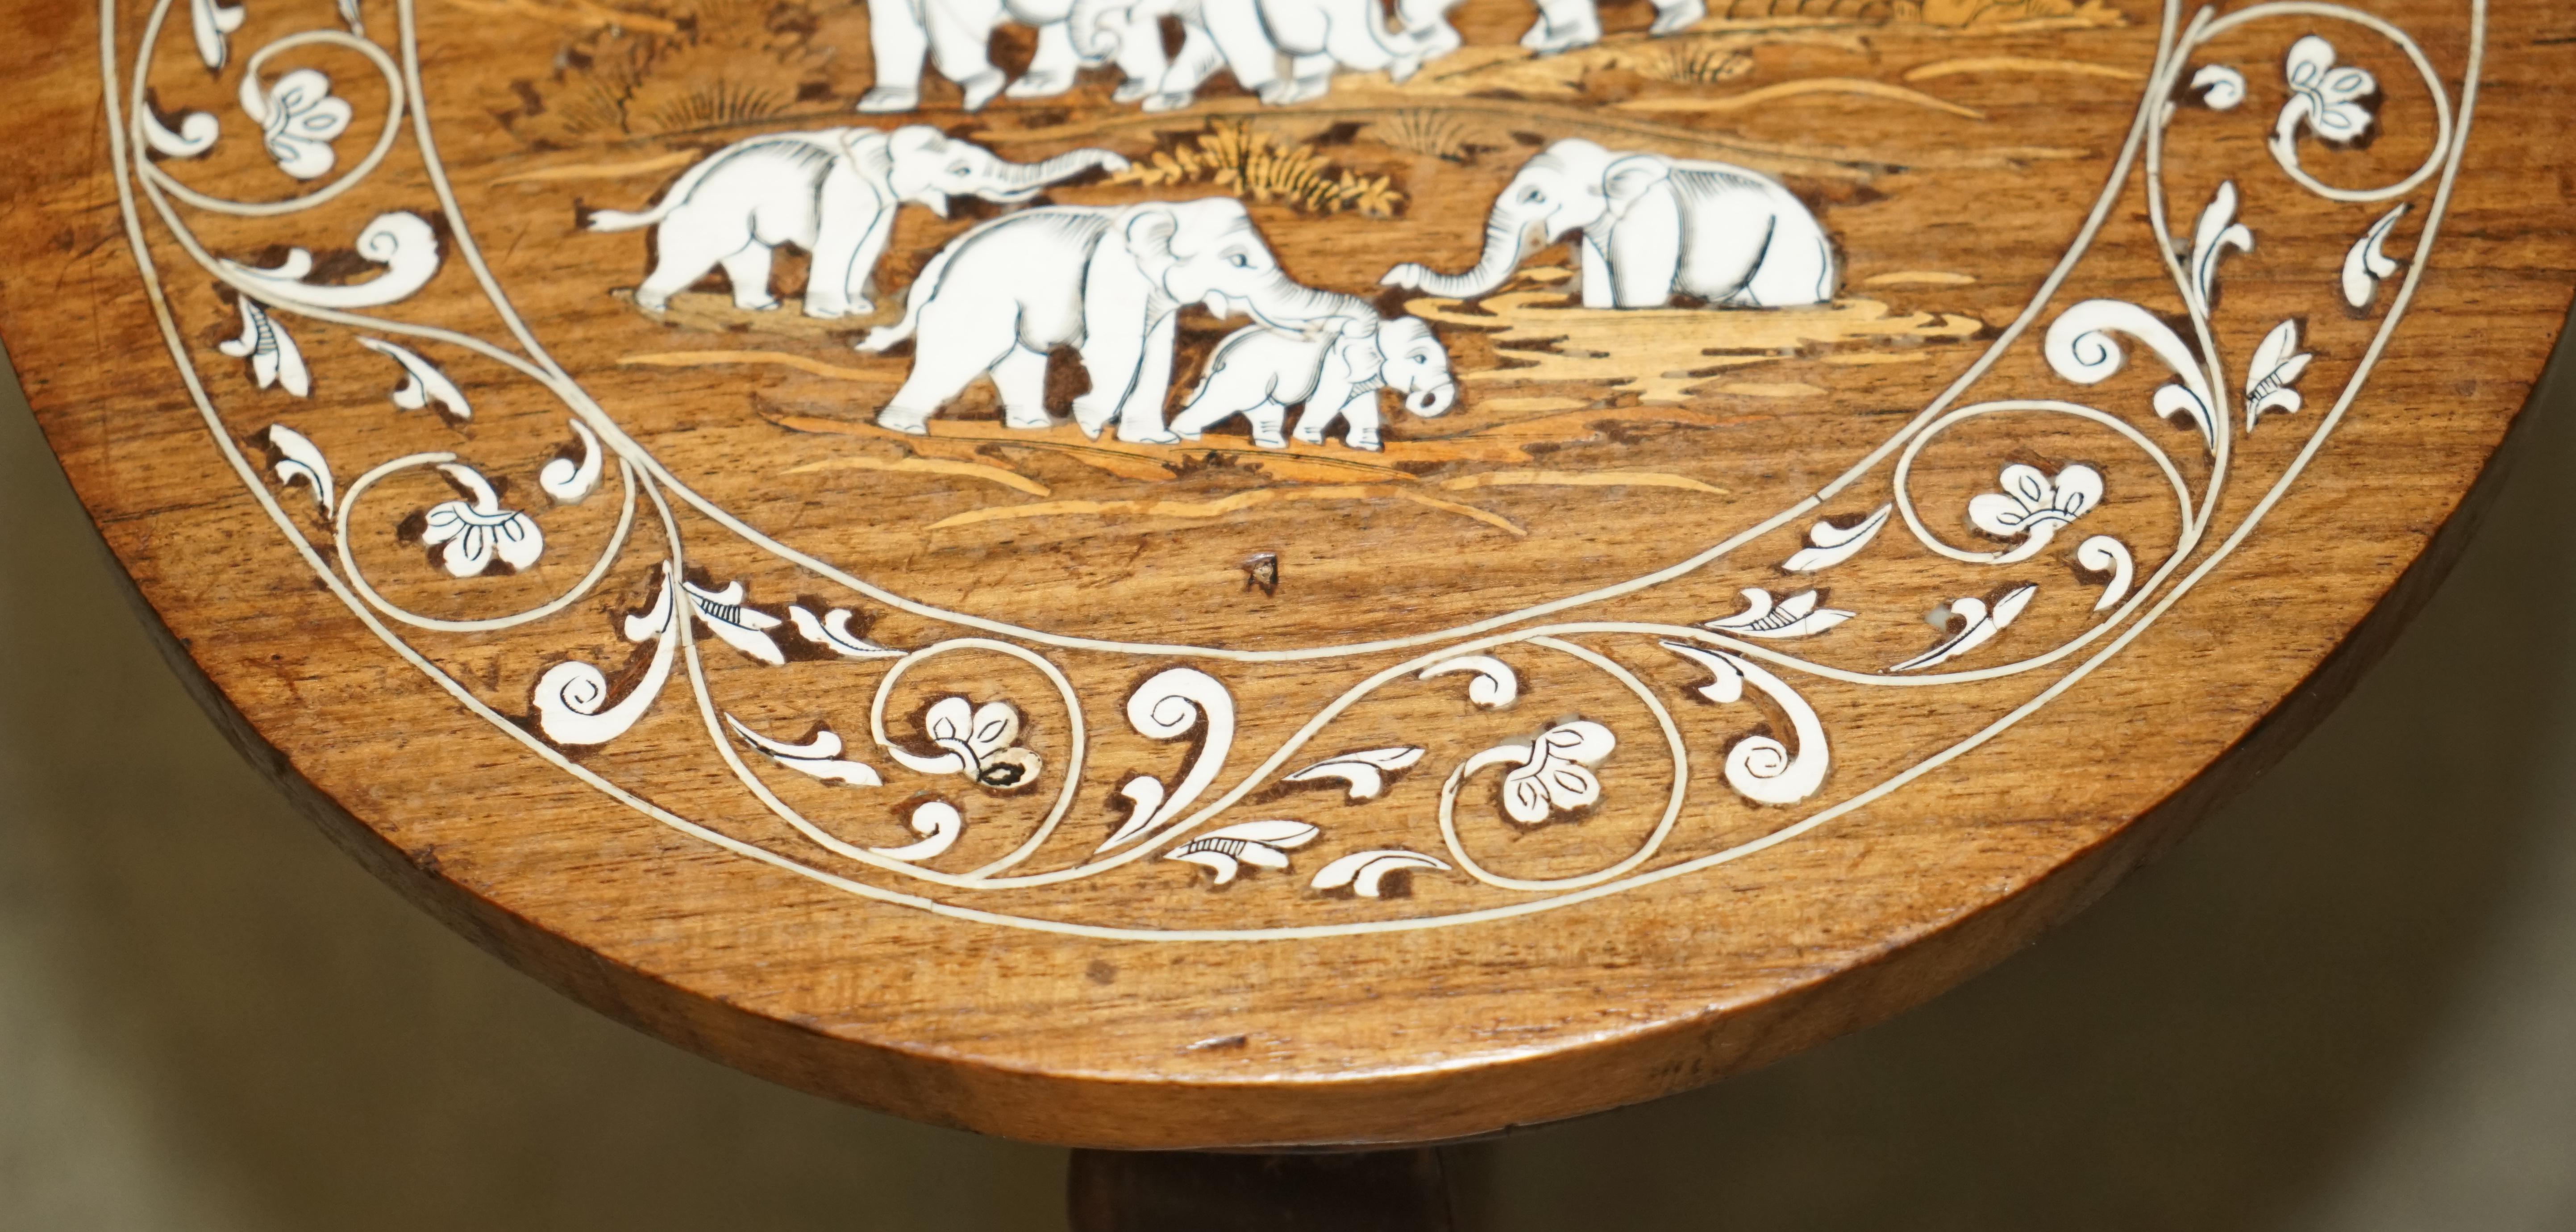 ANTiQUE JAPANESE SHIBAYAMA INLAID ELEPHANT HARDWOOD SIDE END LAMP WINE TABLe For Sale 8